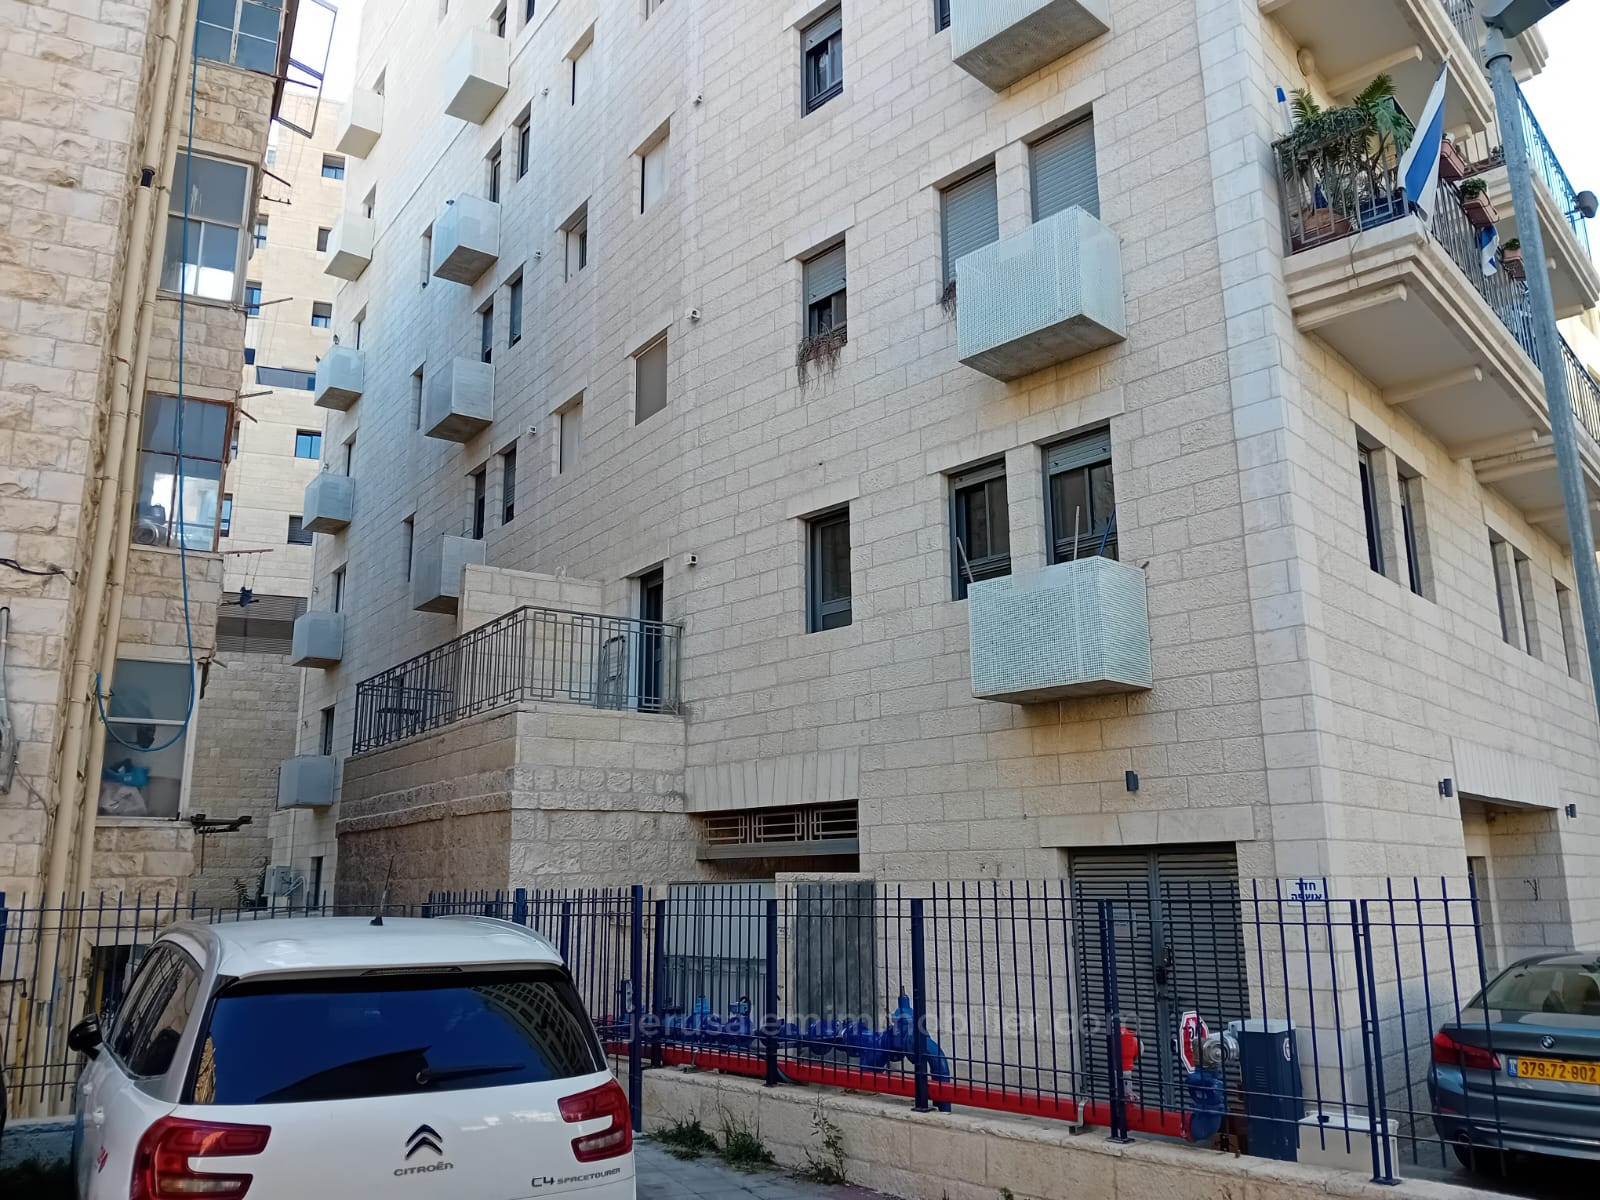 Apartamento 2 cômodos  Jerusalém Centro da cidade 226-IBL-1825